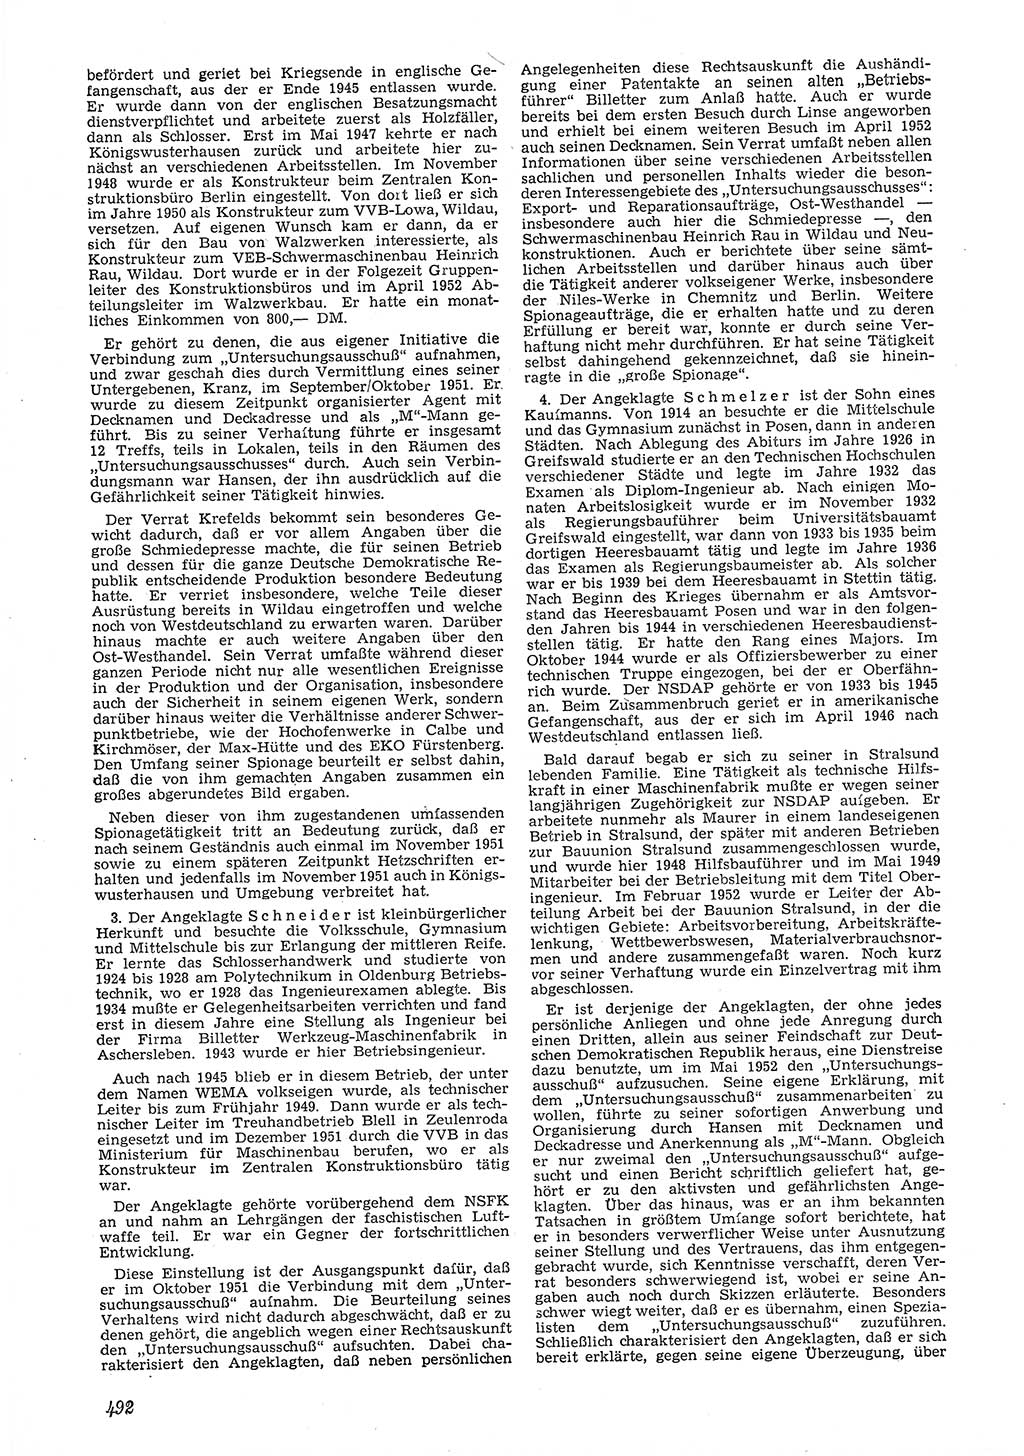 Neue Justiz (NJ), Zeitschrift für Recht und Rechtswissenschaft [Deutsche Demokratische Republik (DDR)], 6. Jahrgang 1952, Seite 492 (NJ DDR 1952, S. 492)